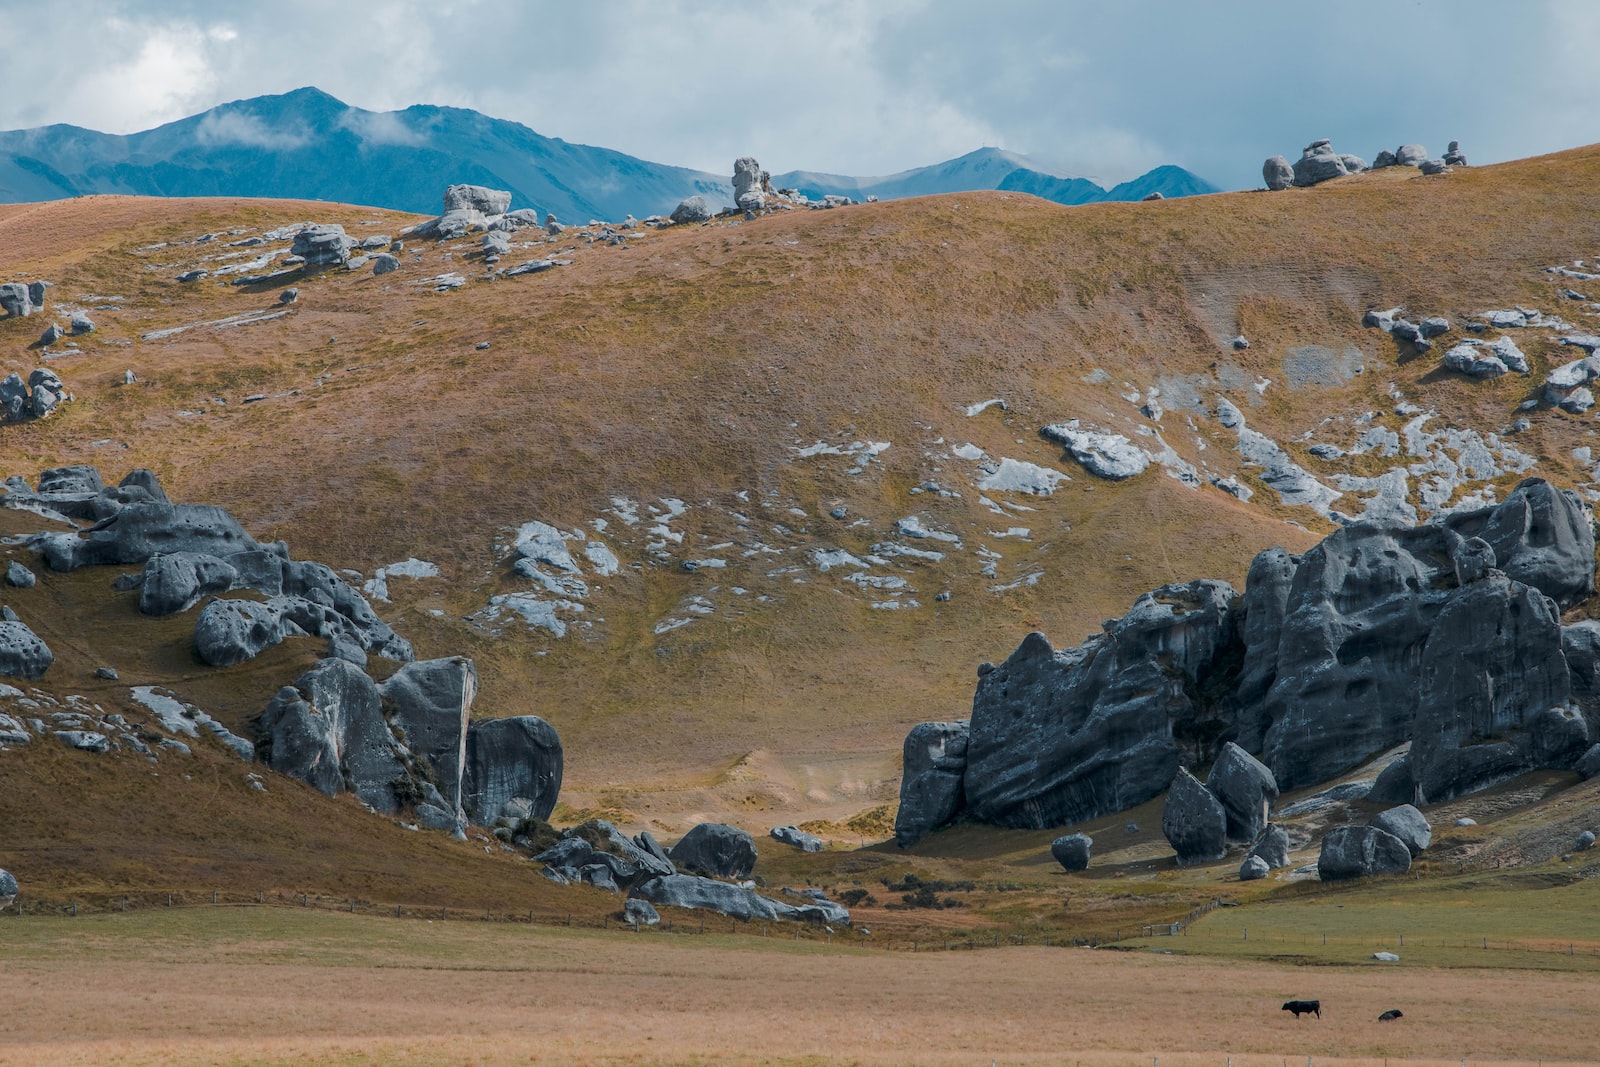 rock formations near mountain taken during daytime